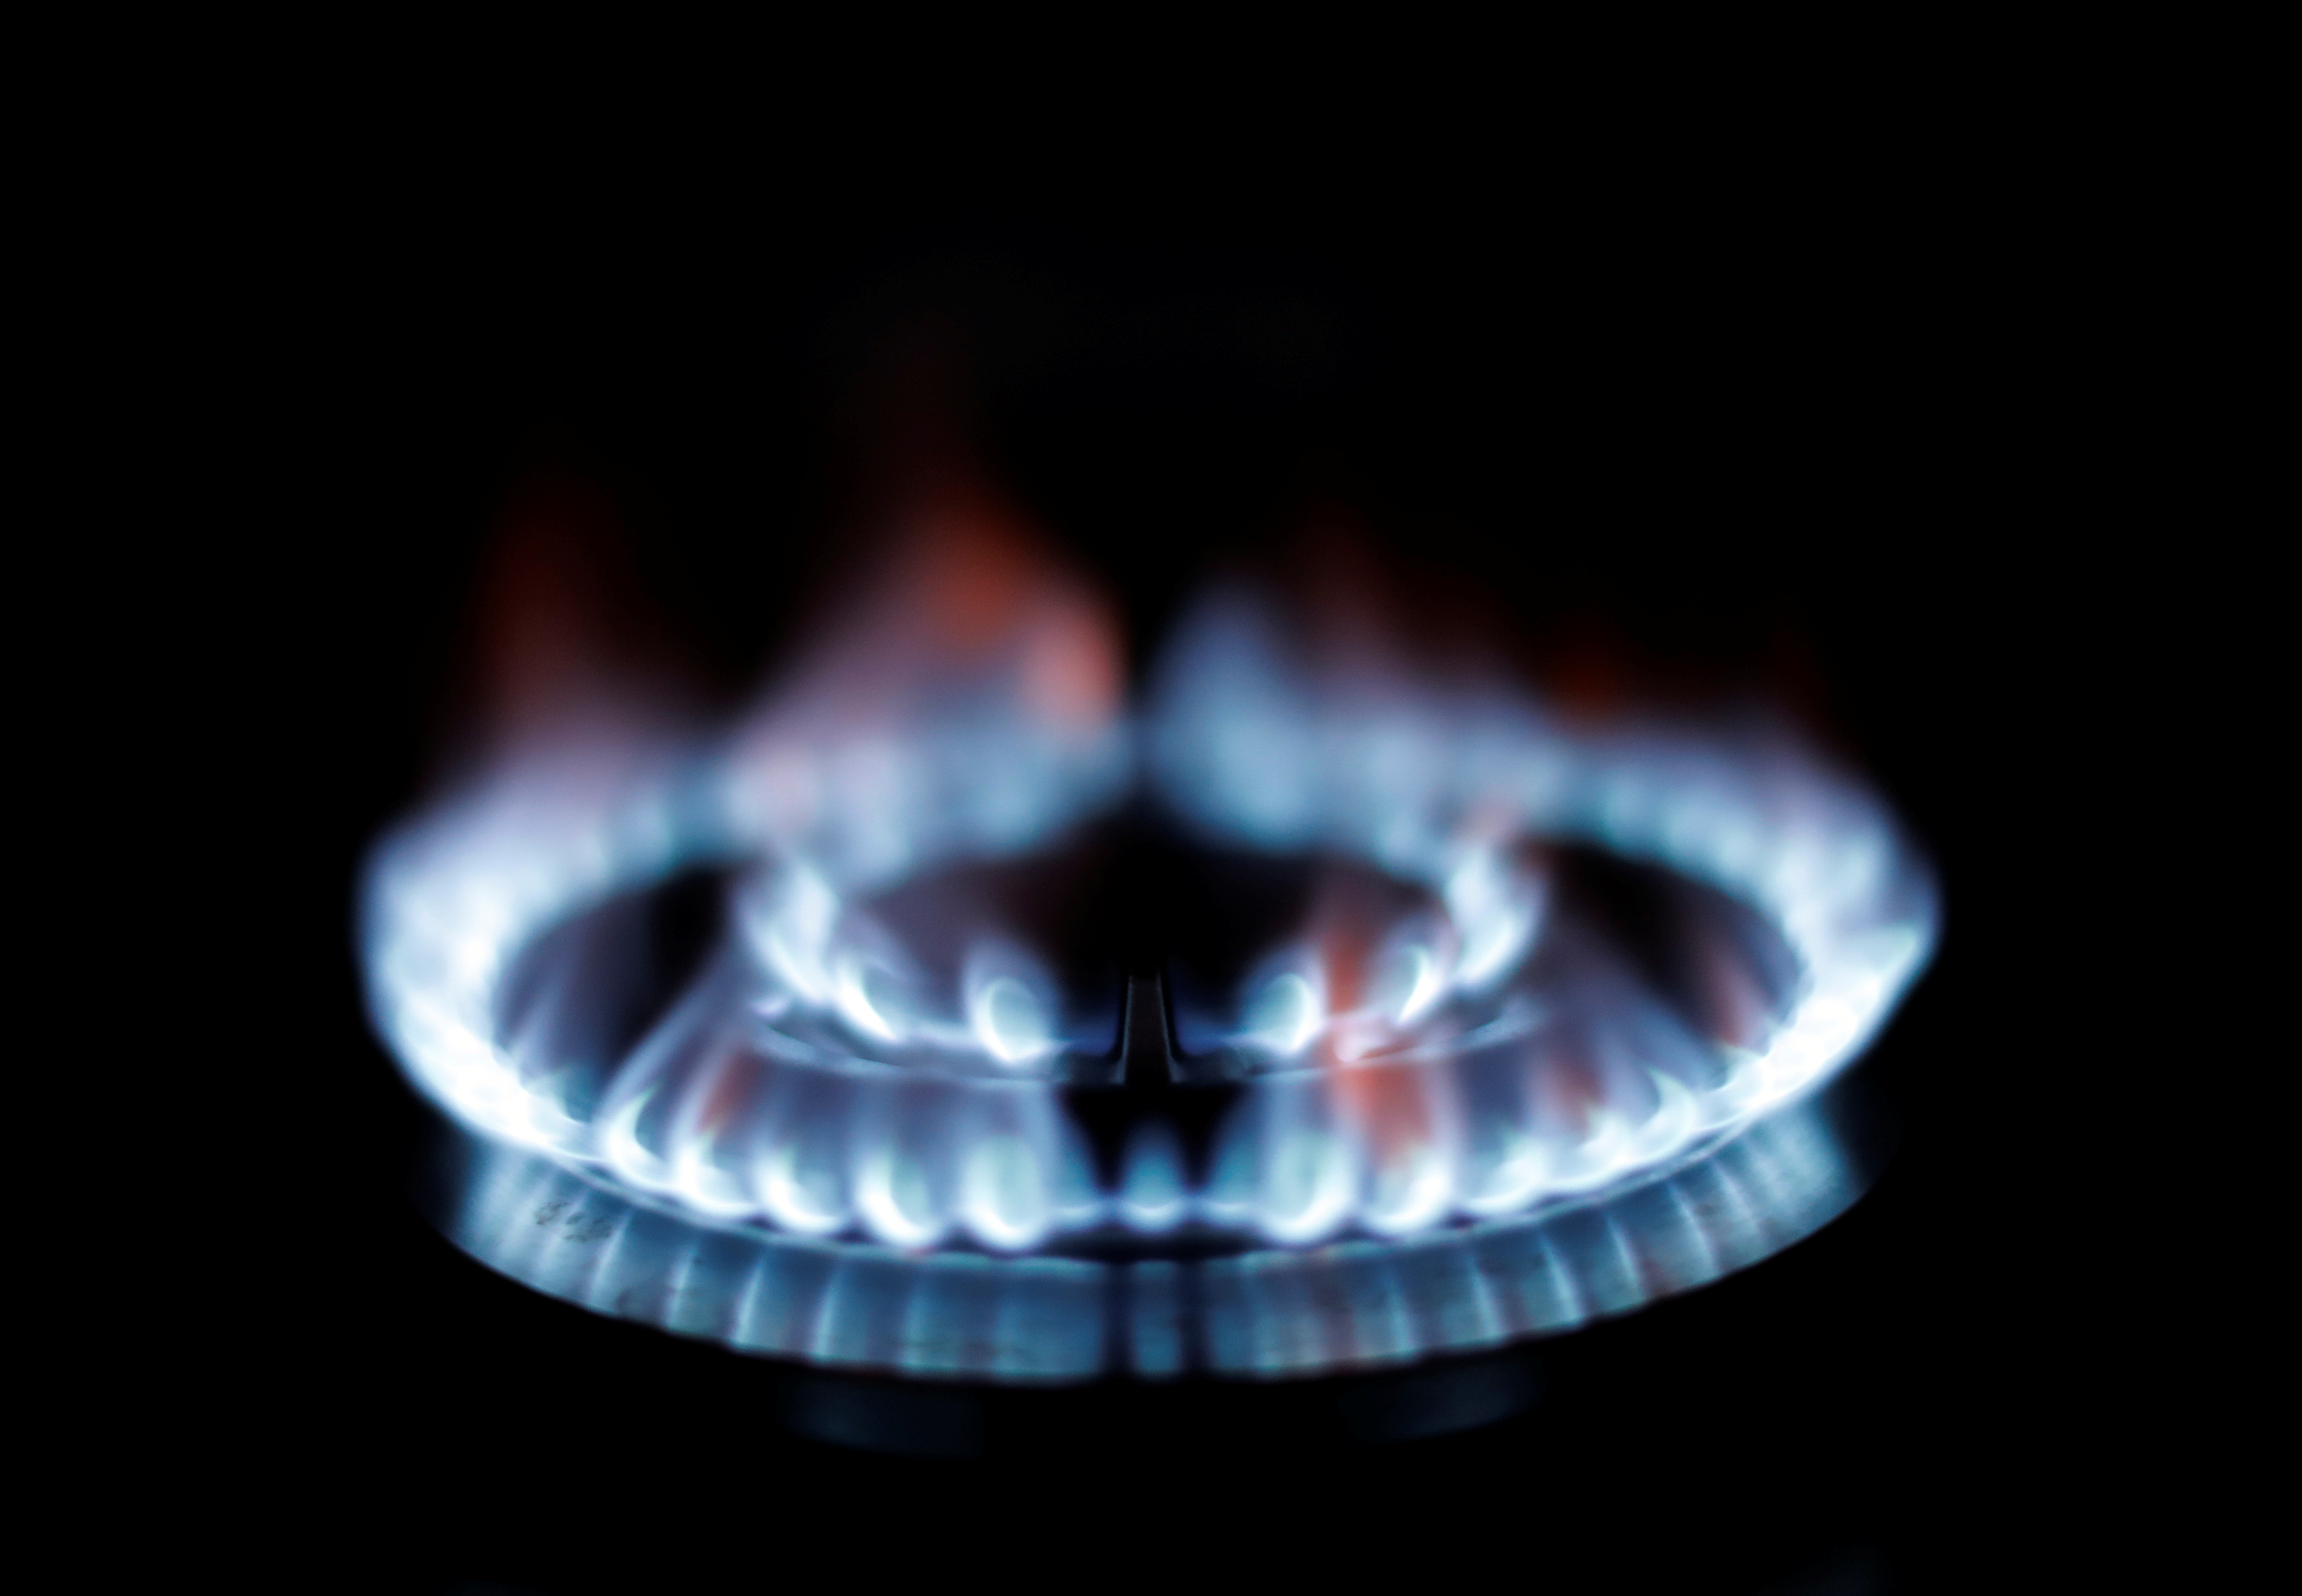 Pendant que l'Europe manque de gaz, la Russie « torche du gaz » à perte